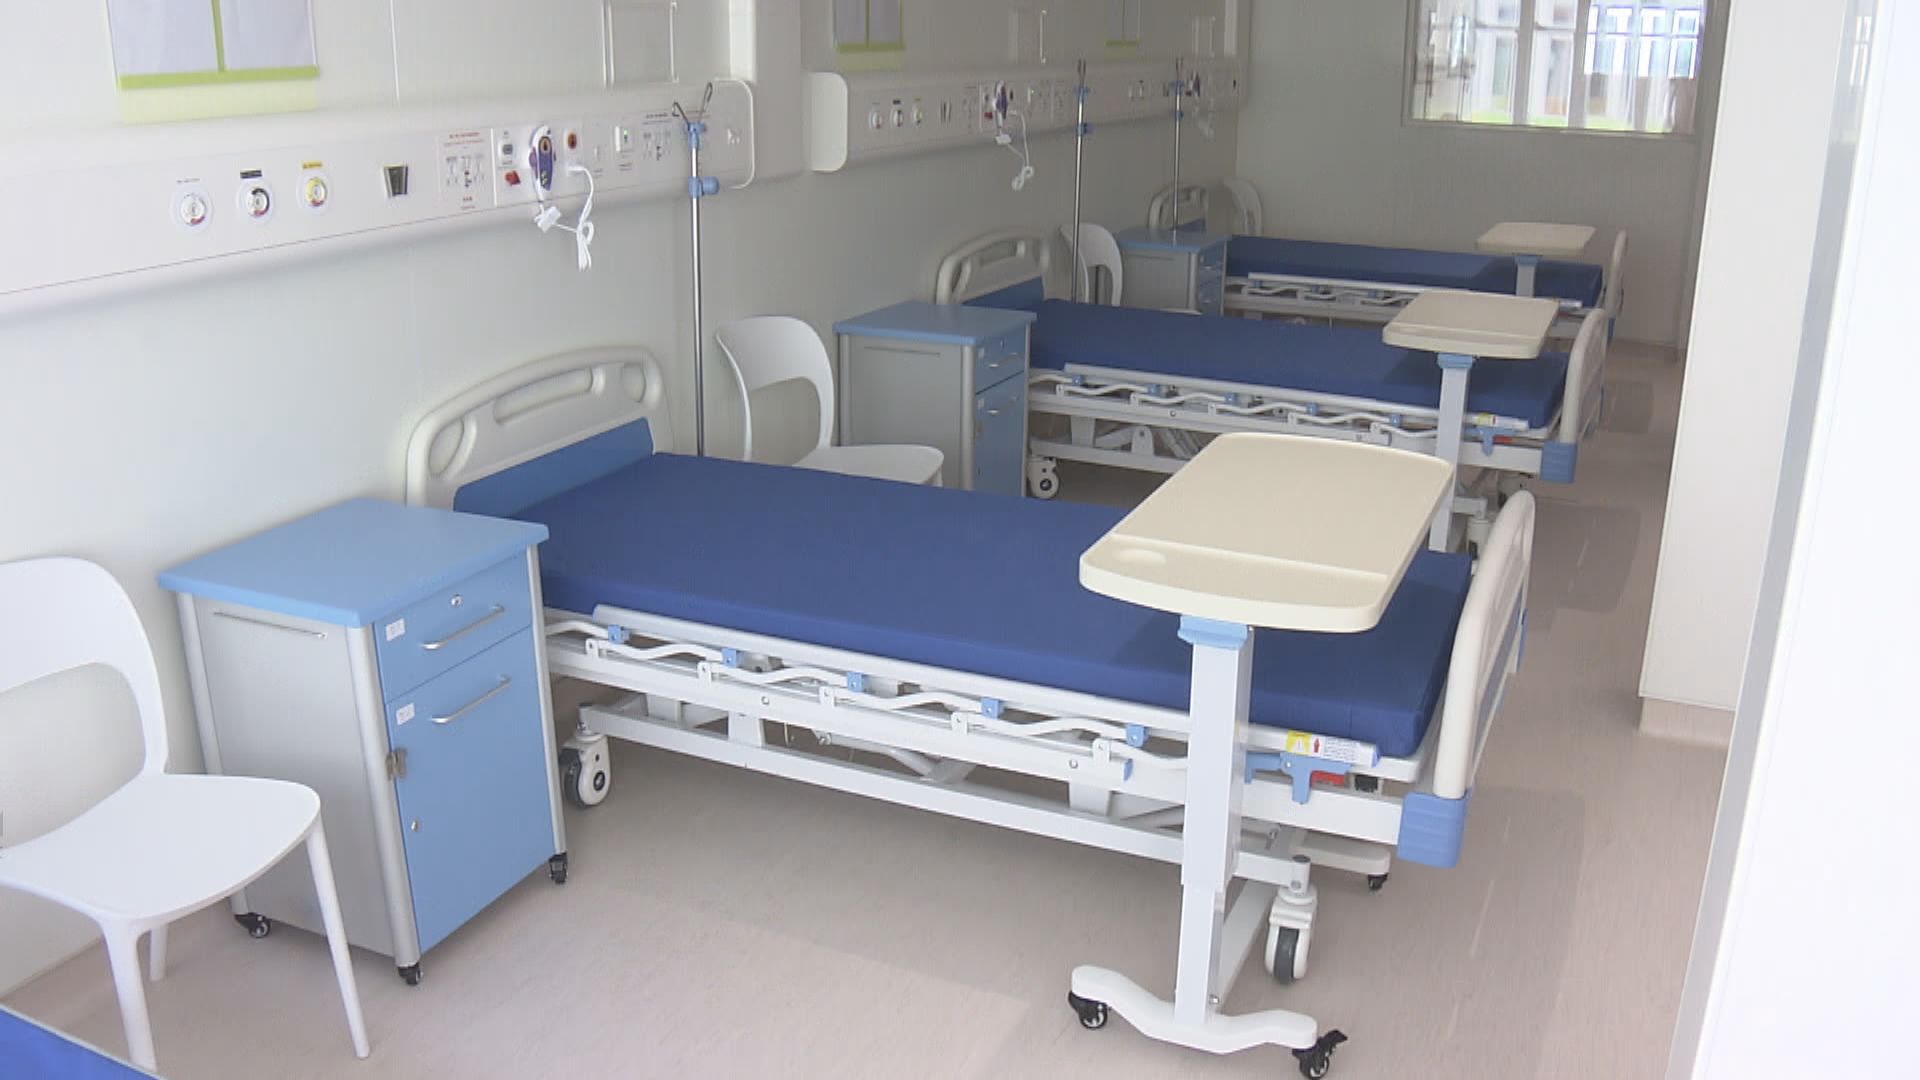 北大嶼山醫院感染控制中心隔離病房負壓系統一度故障